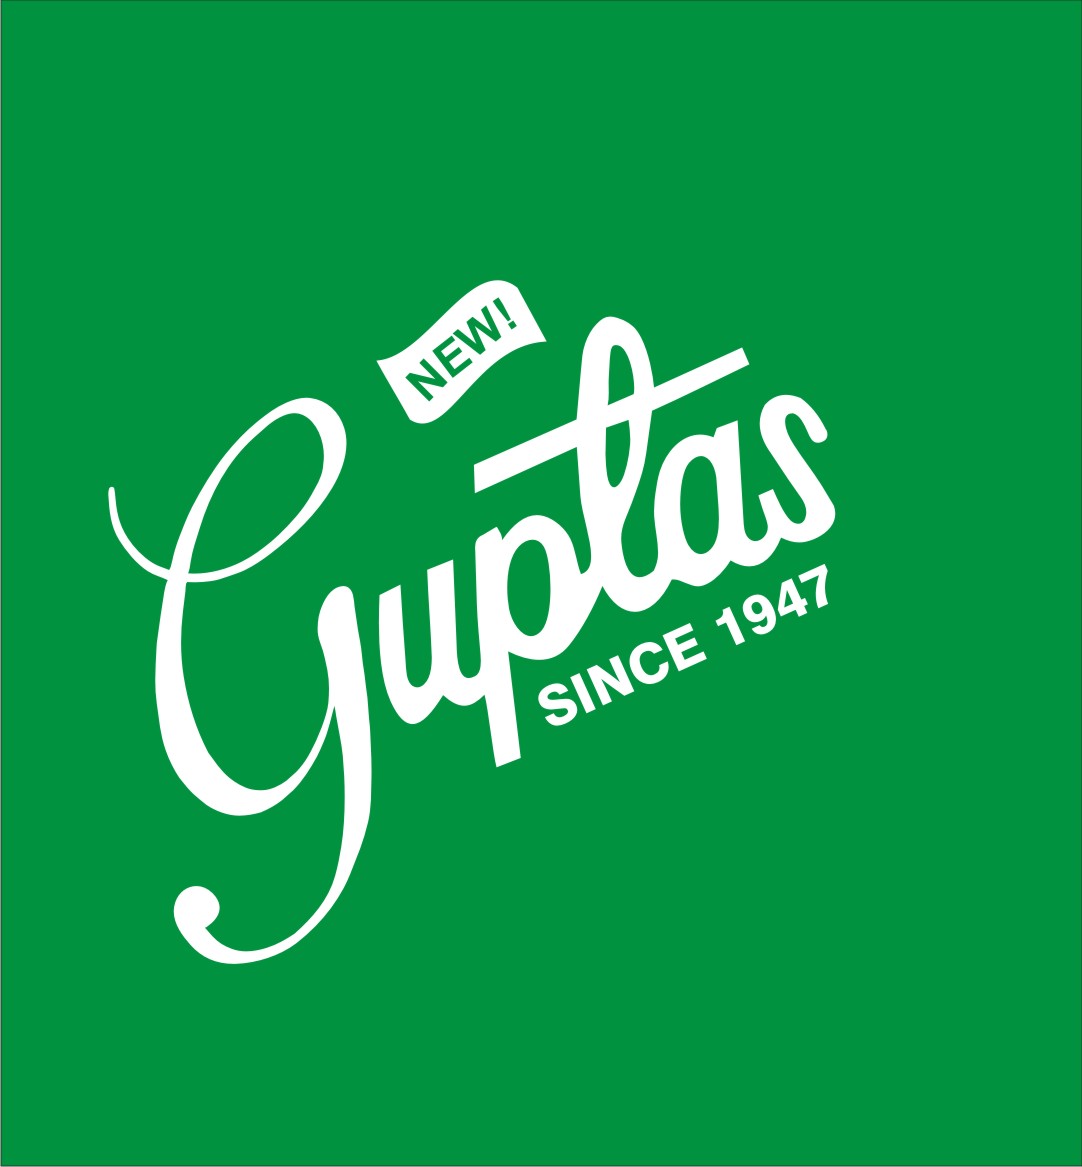 Guptas